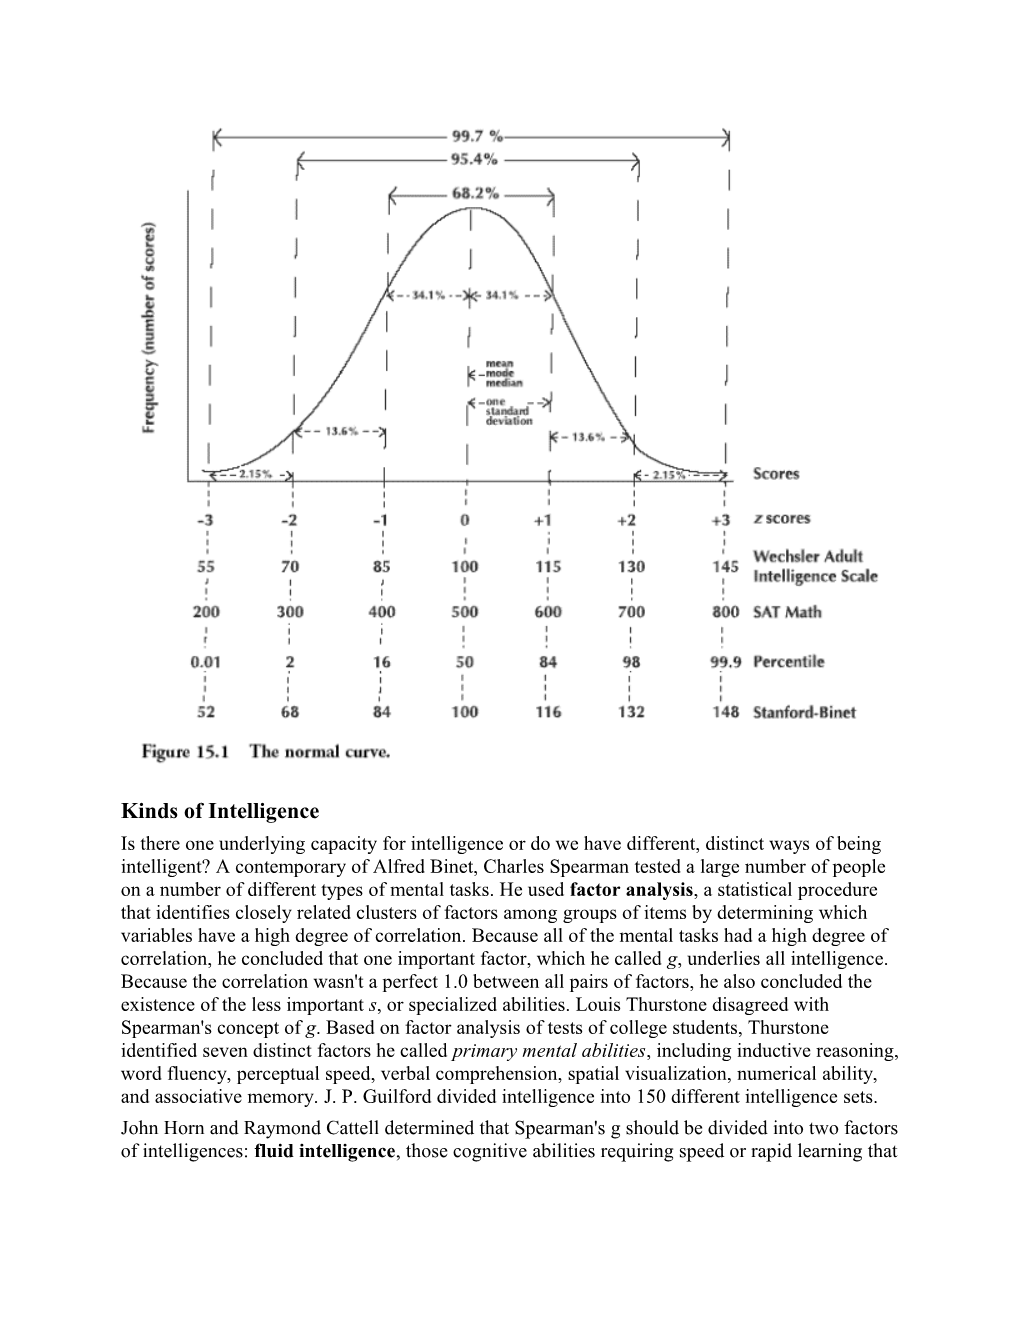 Francis Galton's Measurement of Psychophysical Performance